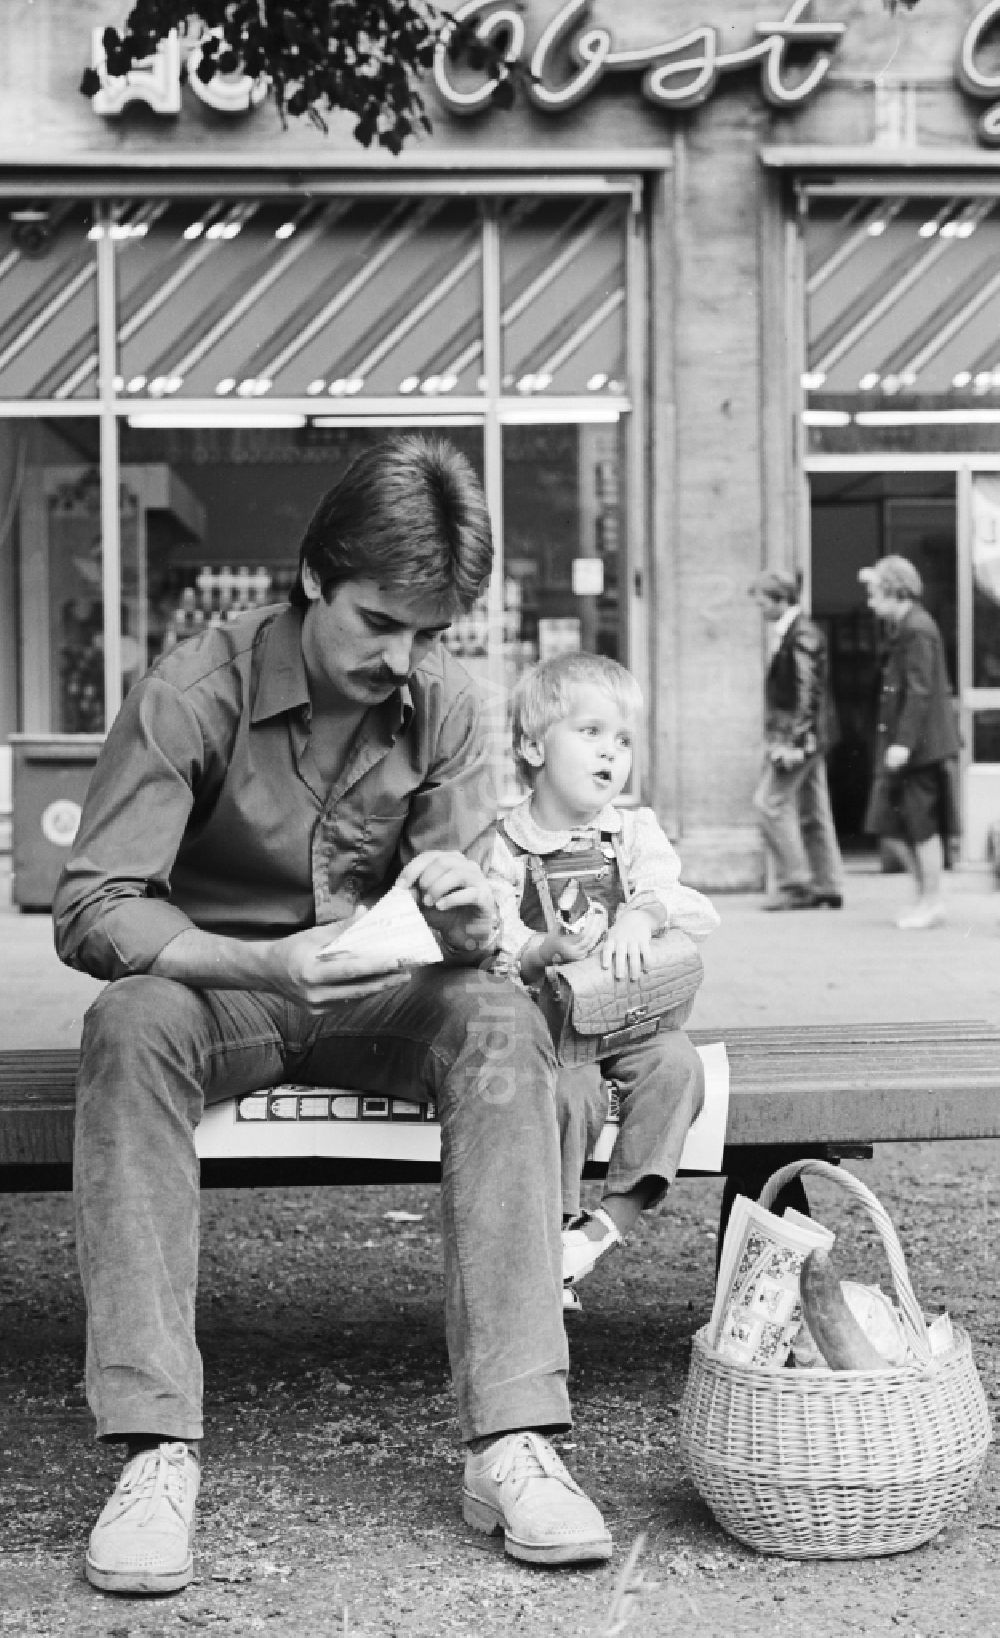 DDR-Bildarchiv: Berlin - Ein Vater sitzt mit seinem Kind auf einer Bank in der Karl-Marx-Allee in Berlin, der ehemaligen Hauptstadt der DDR, Deutsche Demokratische Republik